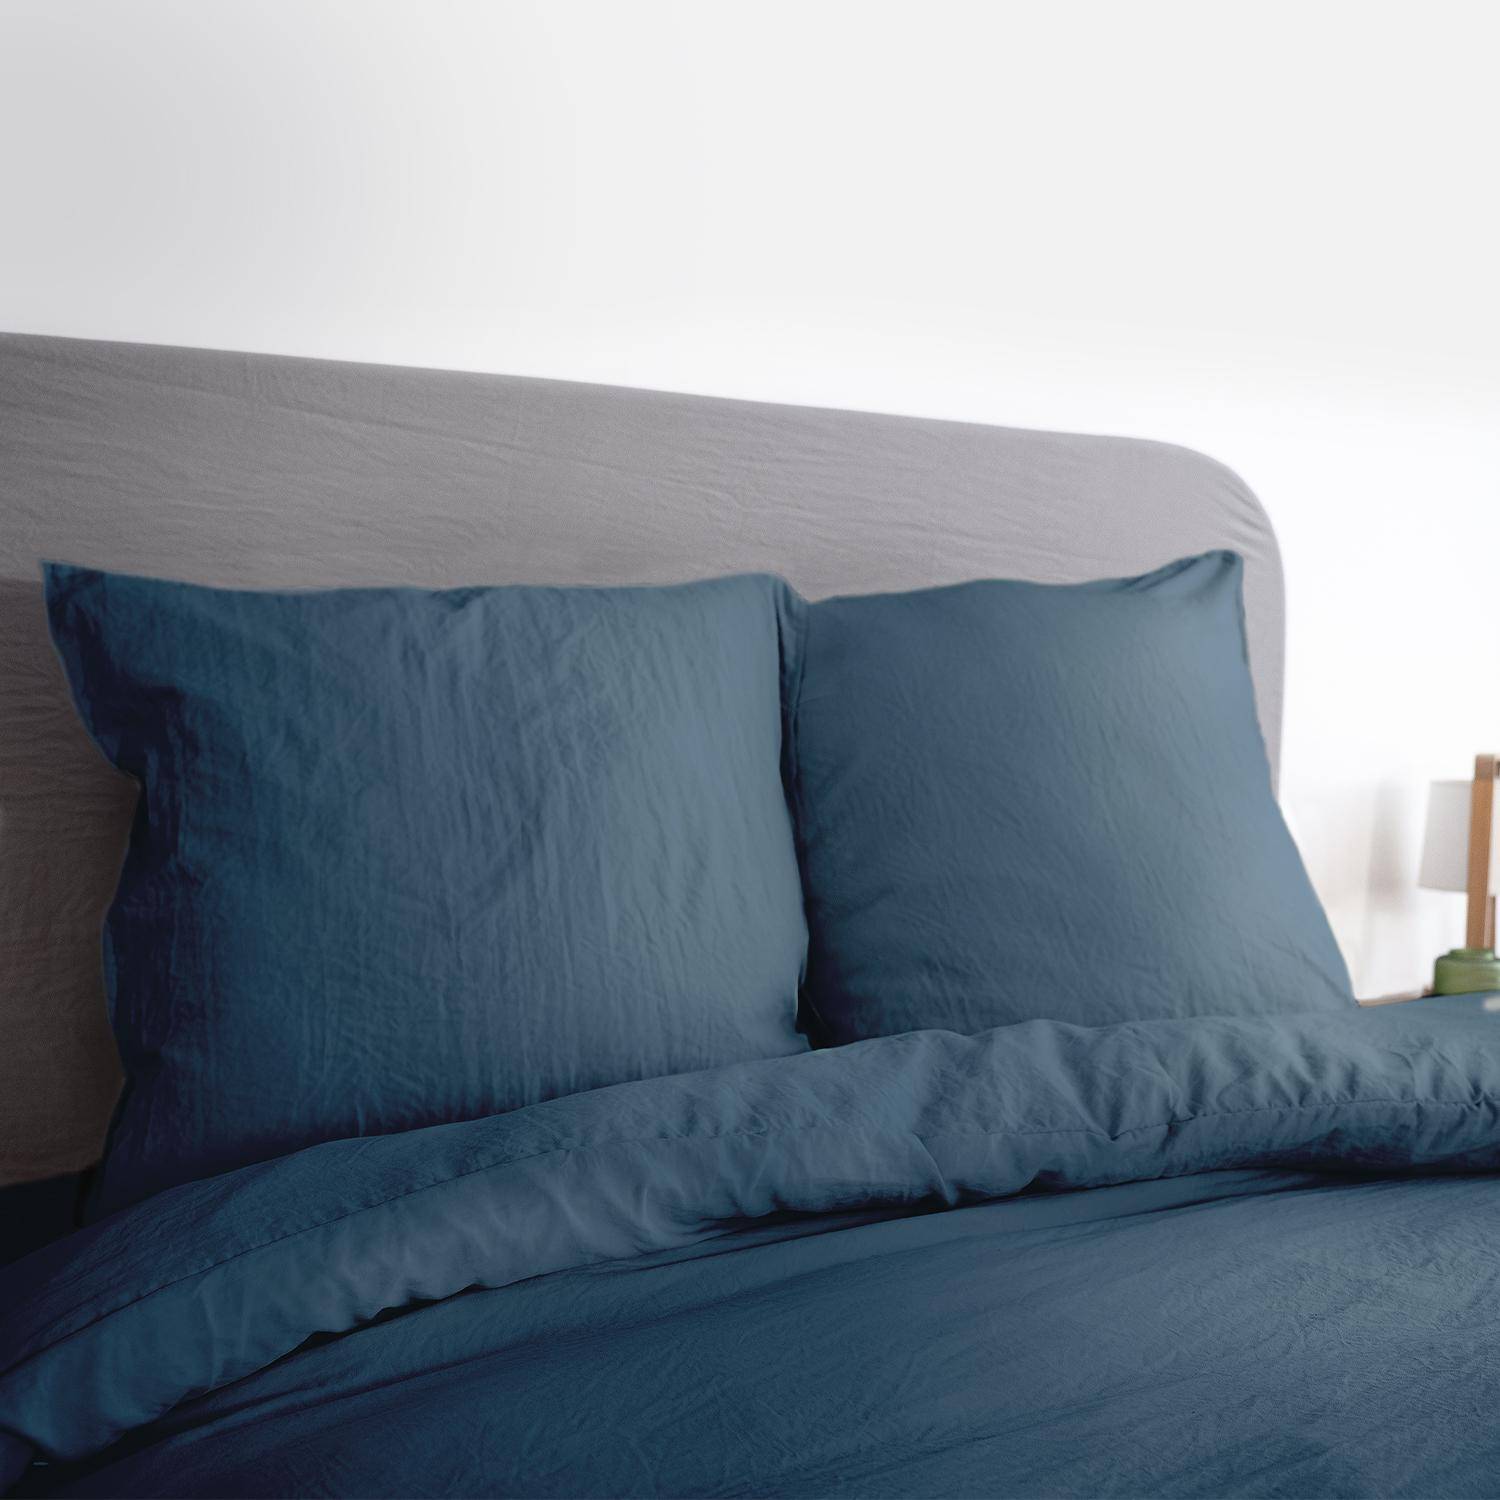 Bettwäsche-Set aus vorgewaschener Mikrofaser in nachtblau 240 x 220 cm für Doppelbetten, 1 Bettbezug und 2 Kissenbezüge,sweeek,Photo2